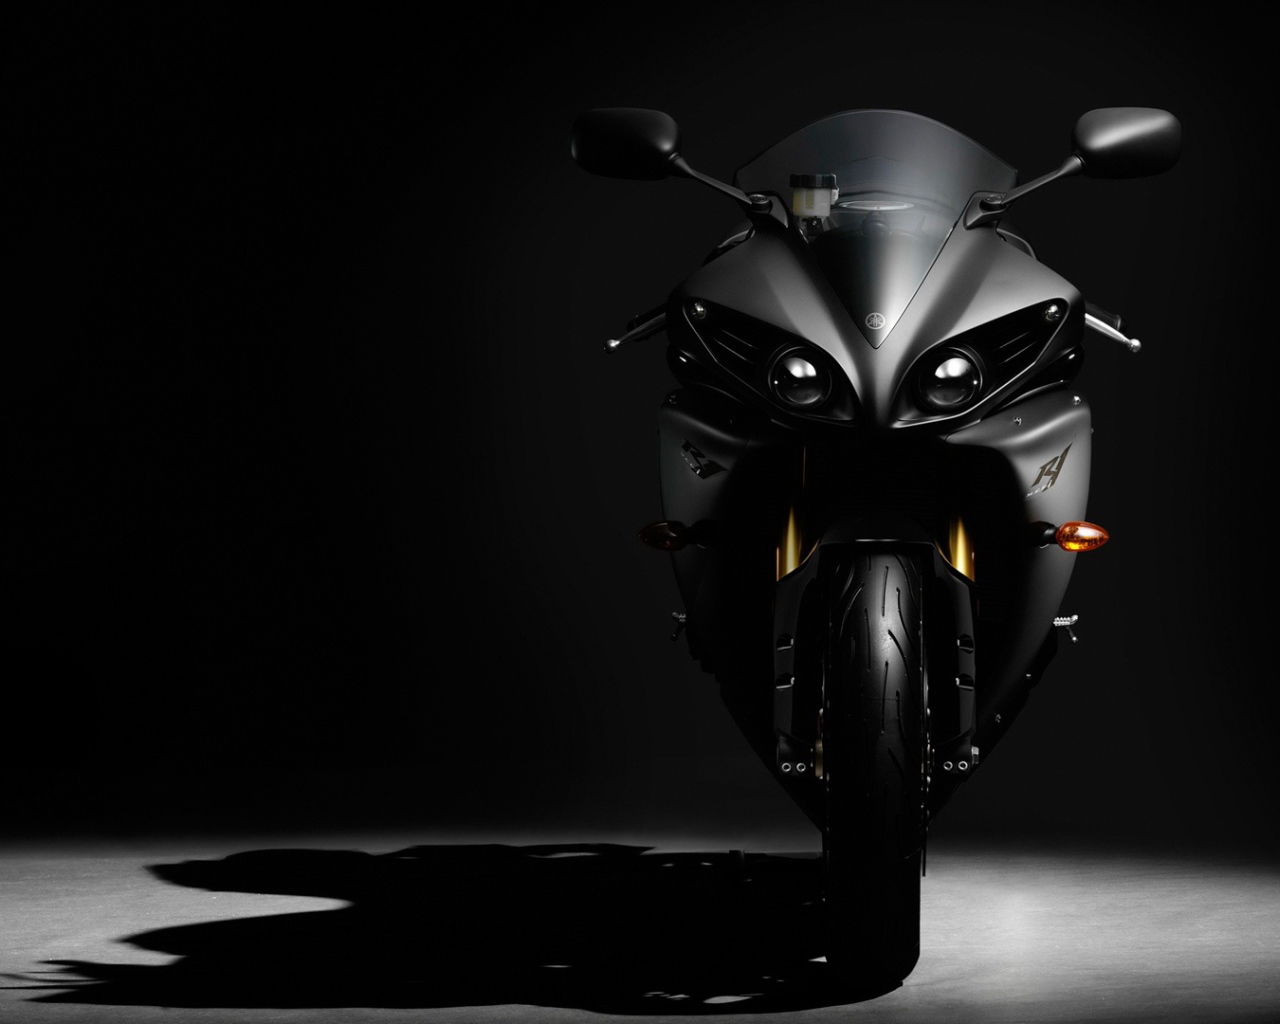 Stylish black motorcycle